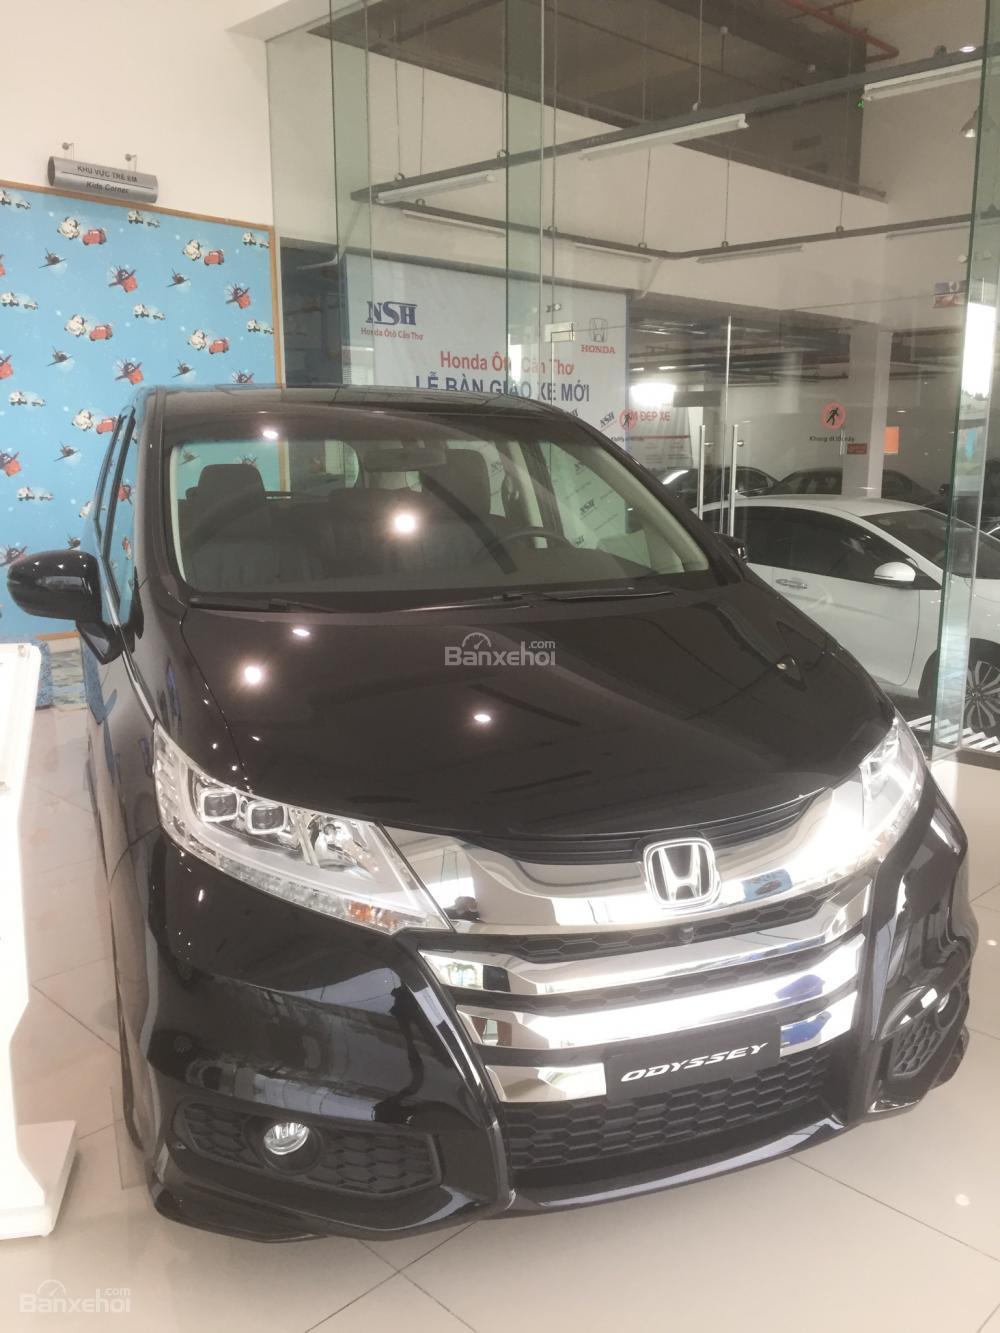 Honda Odyssey CVT 2017 - Honda Odyssey 2017, nhập khẩu Nhật Bản, giao ngay, chỉ với 600 triệu đồng có xe ngay. Lh: 0939065989 (ms. Ly)